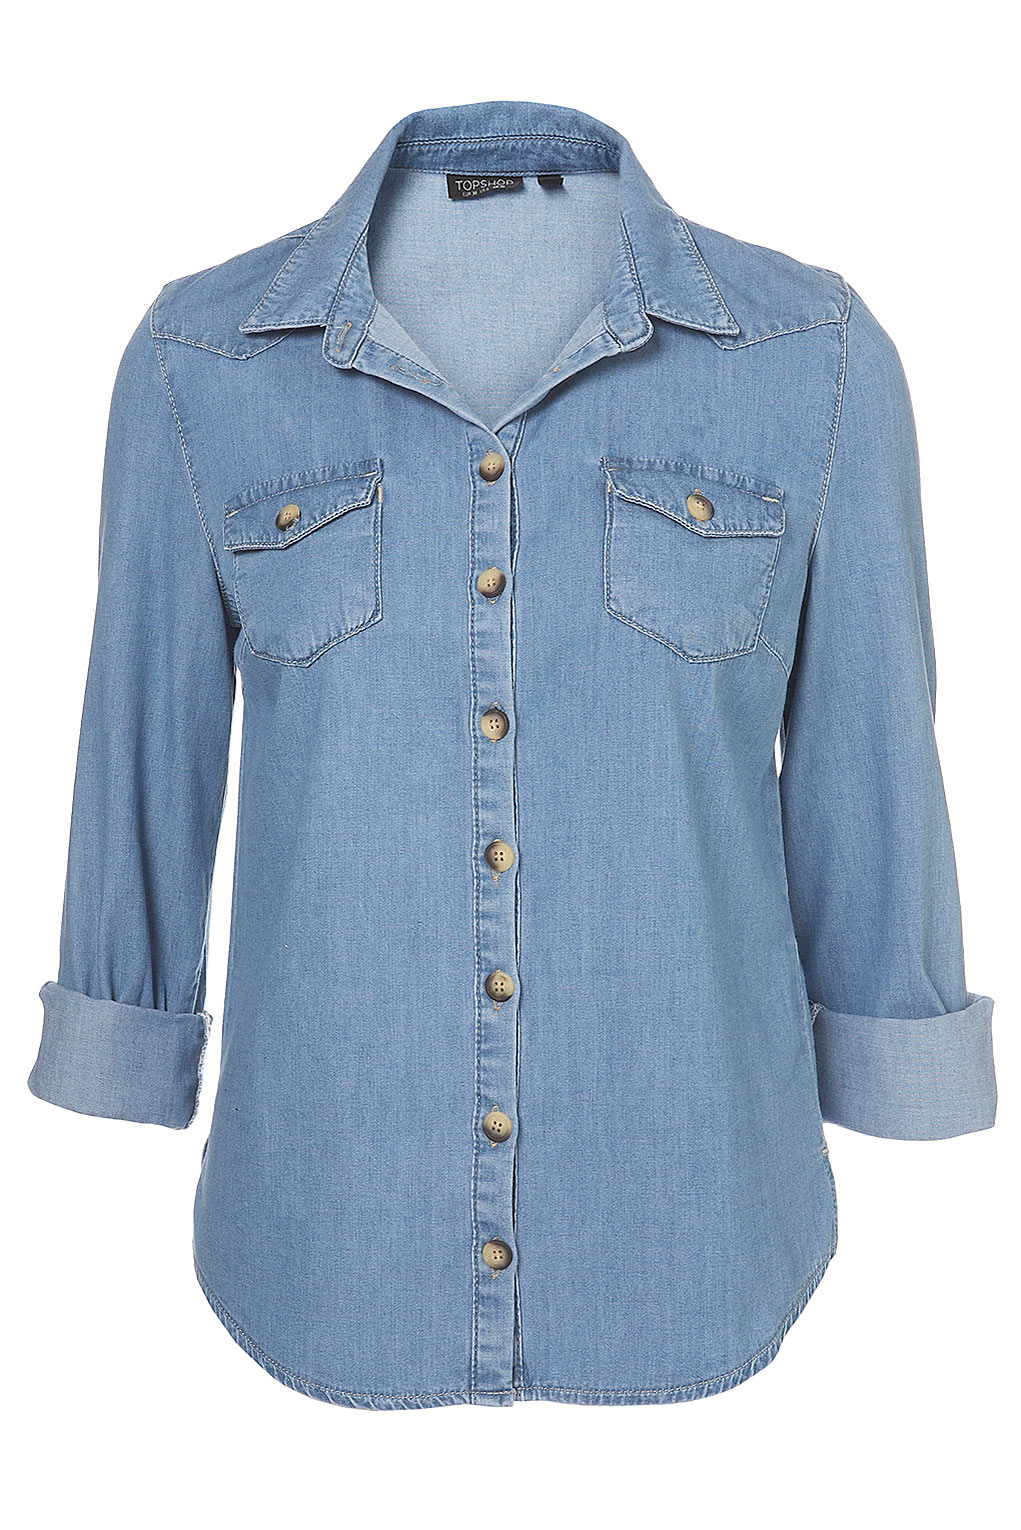 Джинсовые рубашки больших размеров женские. Джинсовая рубашка Zarina. Blue Ridge Denim рубашка джинсовая. Cerutti джинсовая рубашка. Mavi джинсовая рубашка Fiona.